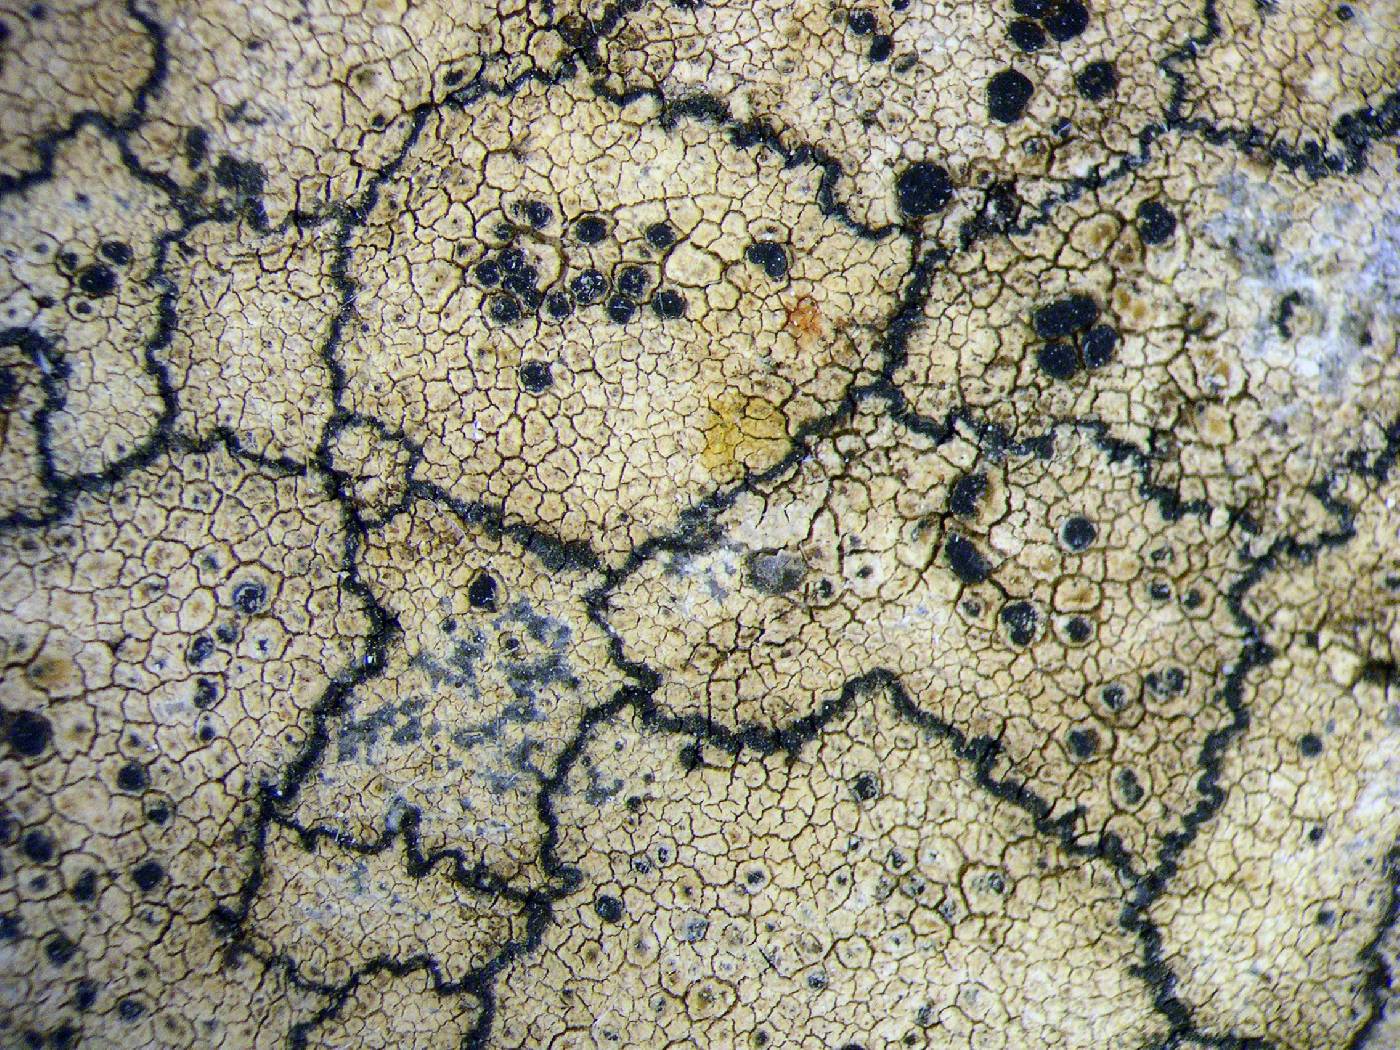 Carbonea image